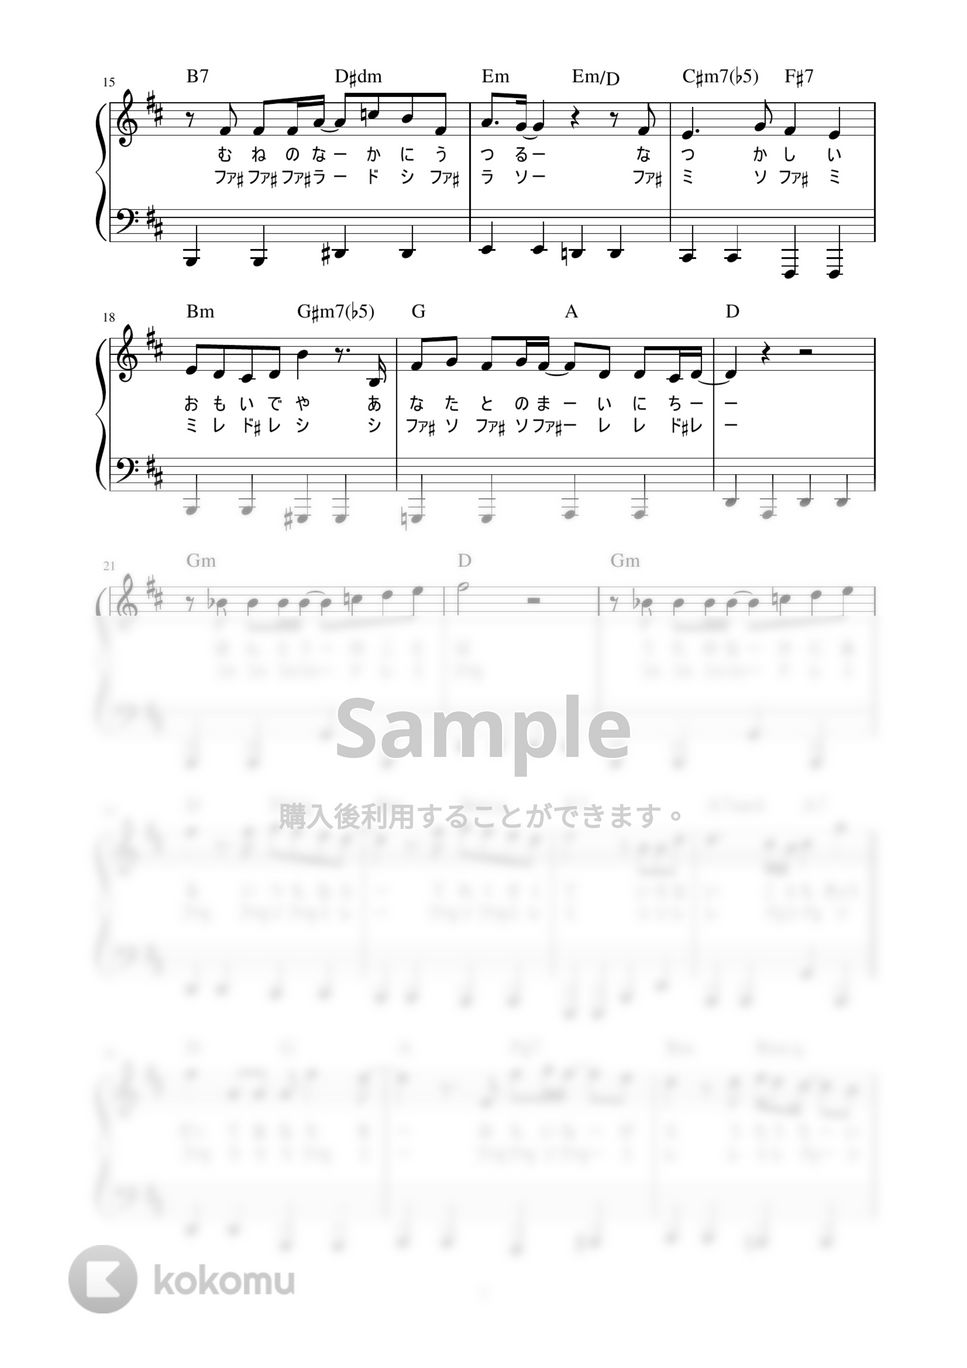 斉藤和義 - 歌うたいのバラッド (かんたん / 歌詞付き / ドレミ付き / 初心者) by piano.tokyo